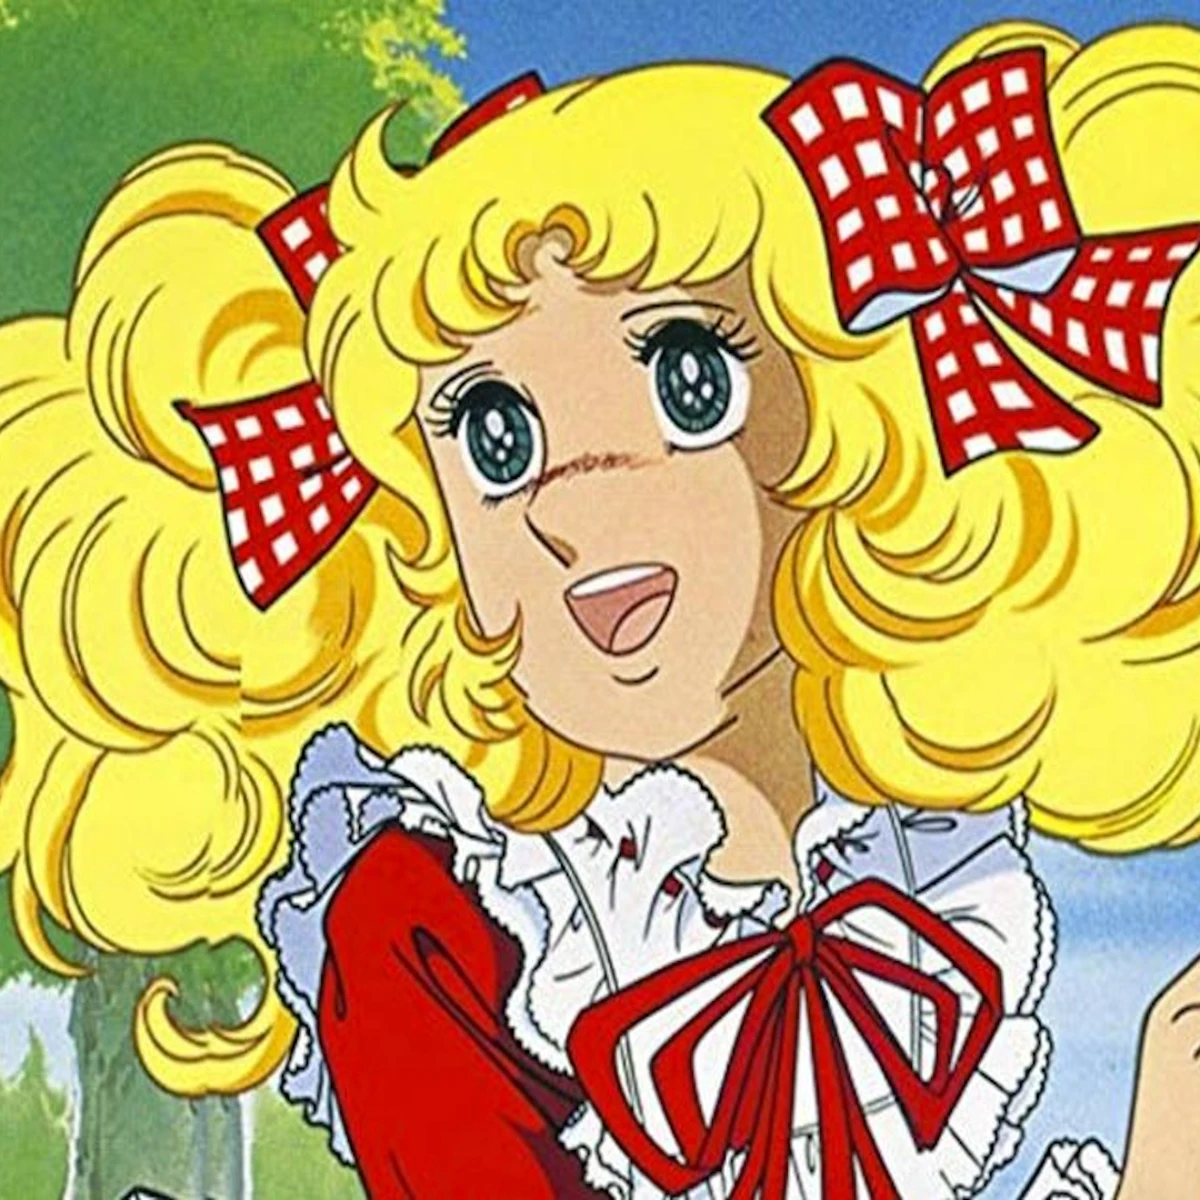 Candy Candy”: Todos los amores y decepciones de la protagonista a 43 años  de su final, Animes